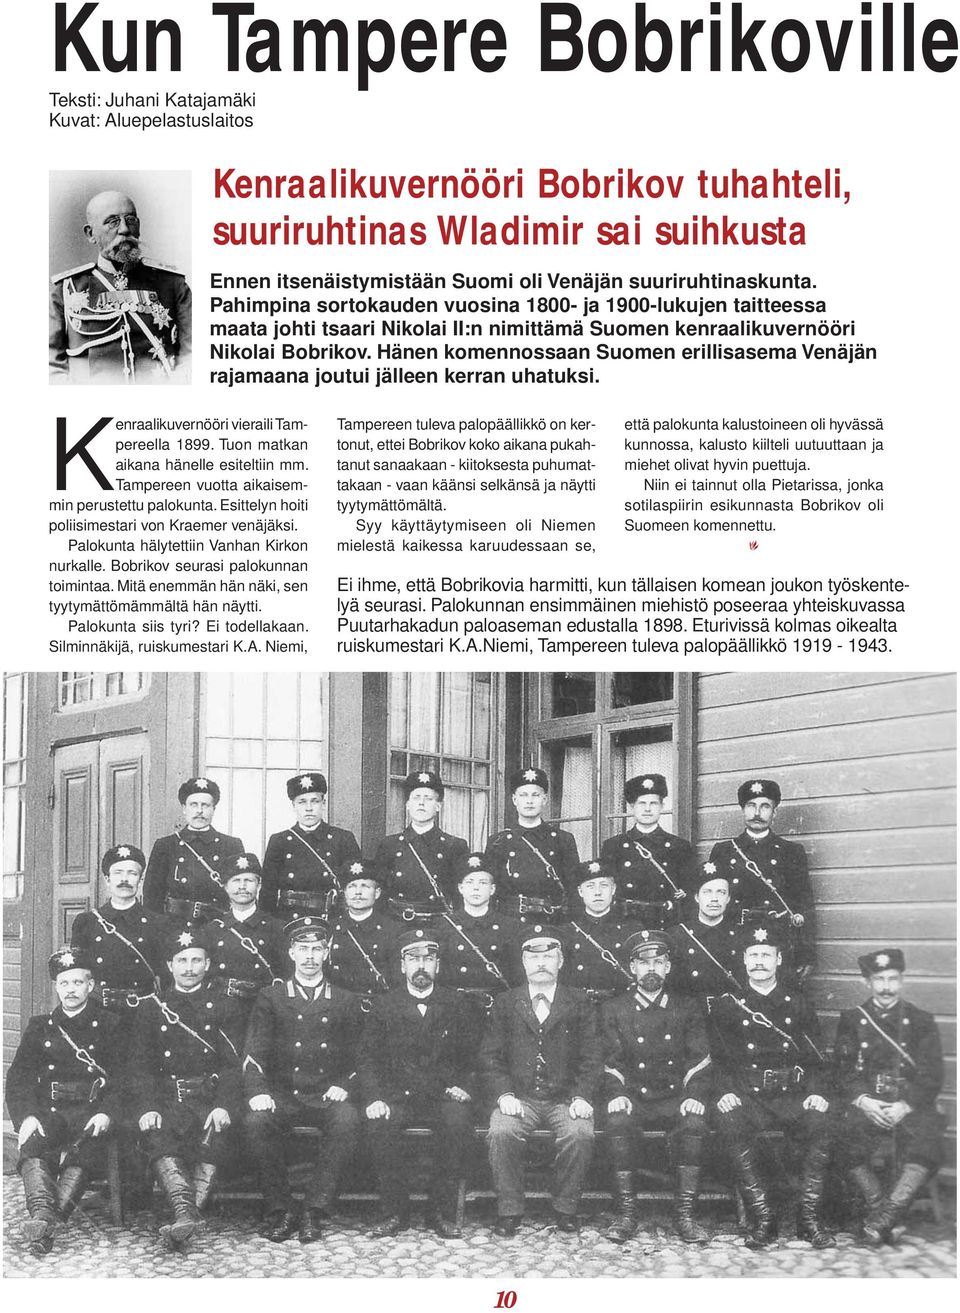 Hänen komennossaan Suomen erillisasema Venäjän rajamaana joutui jälleen kerran uhatuksi. Kenraalikuvernööri vieraili Tampereella 1899. Tuon matkan aikana hänelle esiteltiin mm.